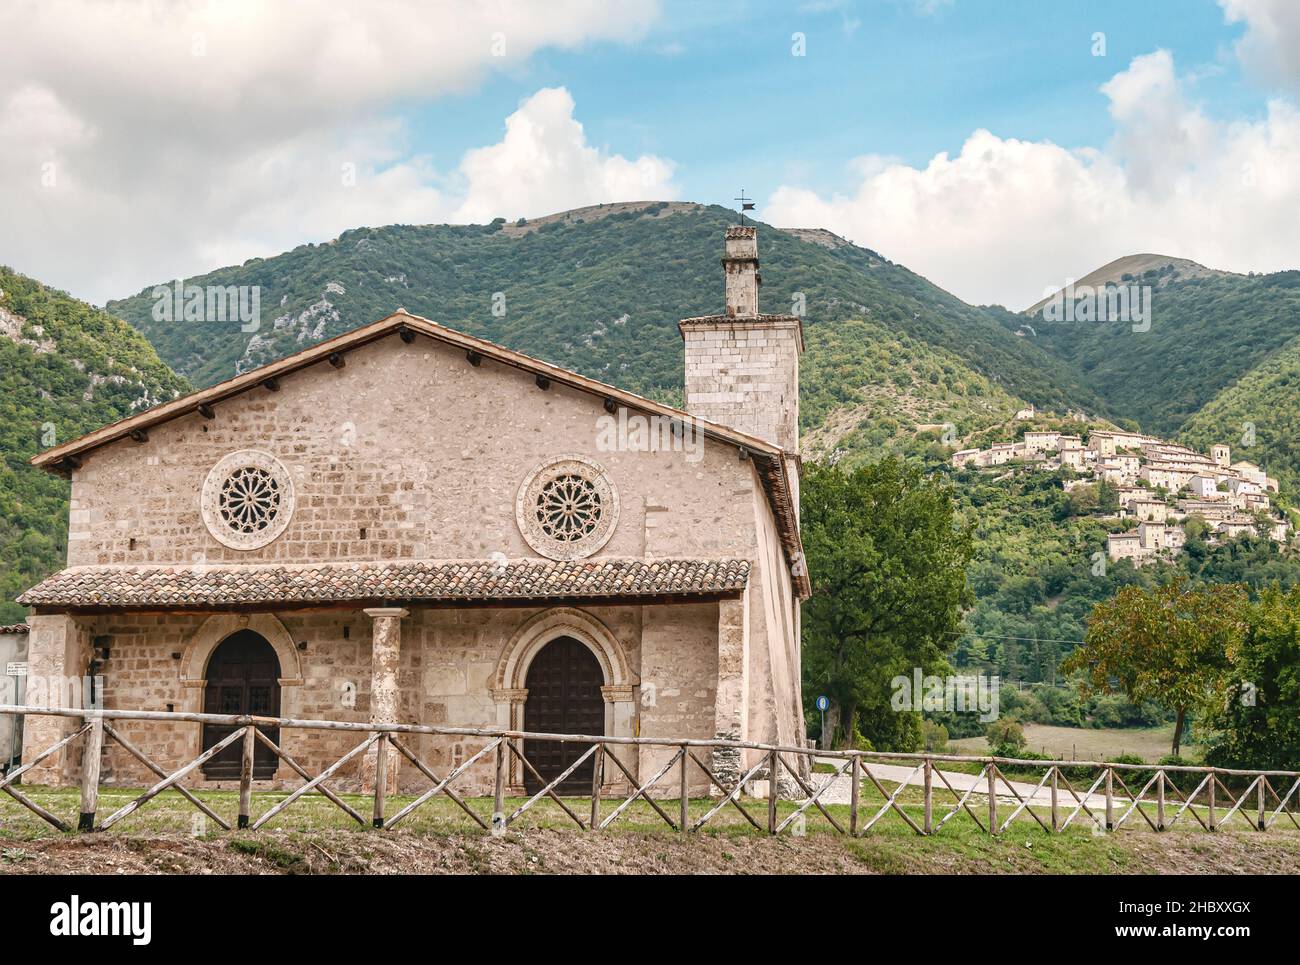 La chiesa di San Salvatore and the mountain village Castelsantangelo sul Nera at the background, Marche Region, Italy Stock Photo